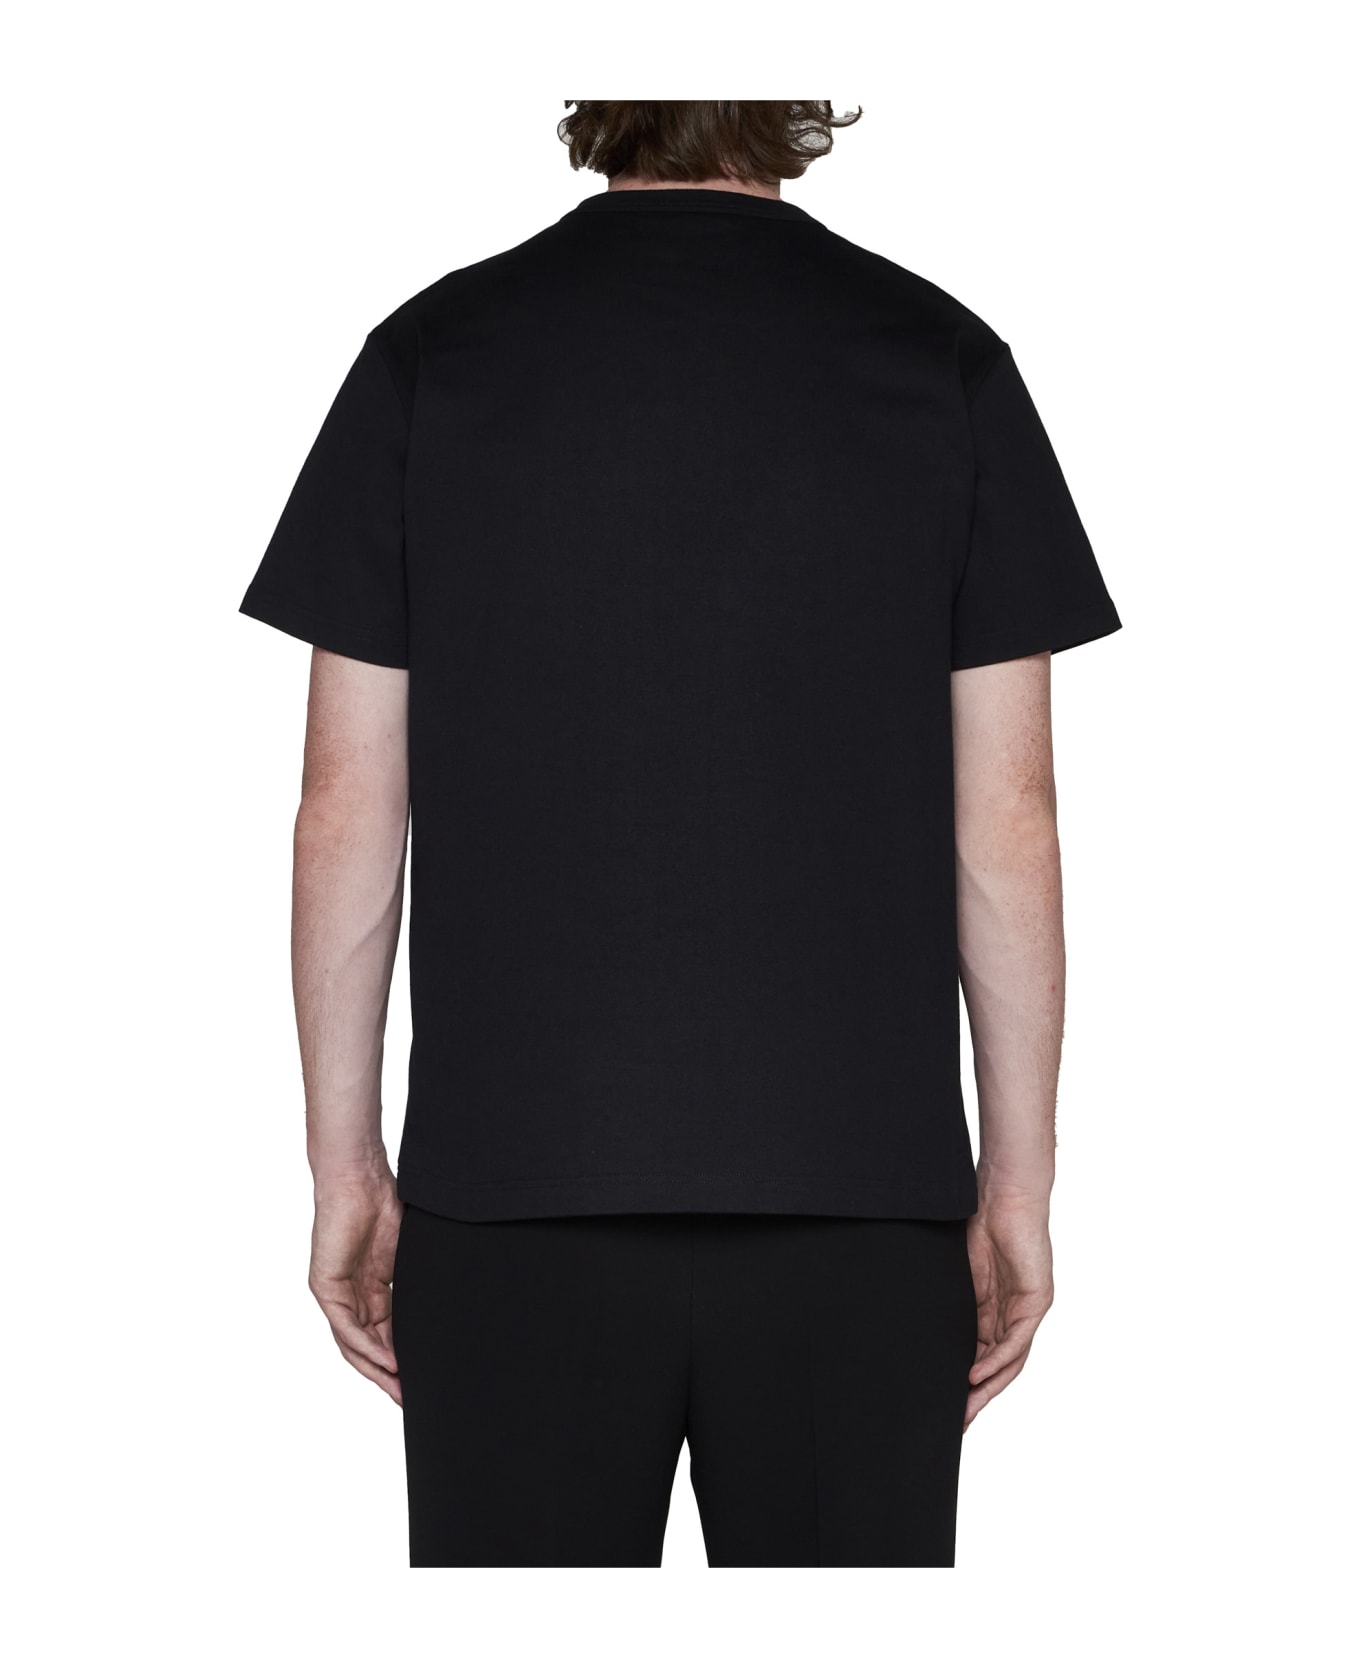 Alexander McQueen Varsity T-shirt - Black White シャツ